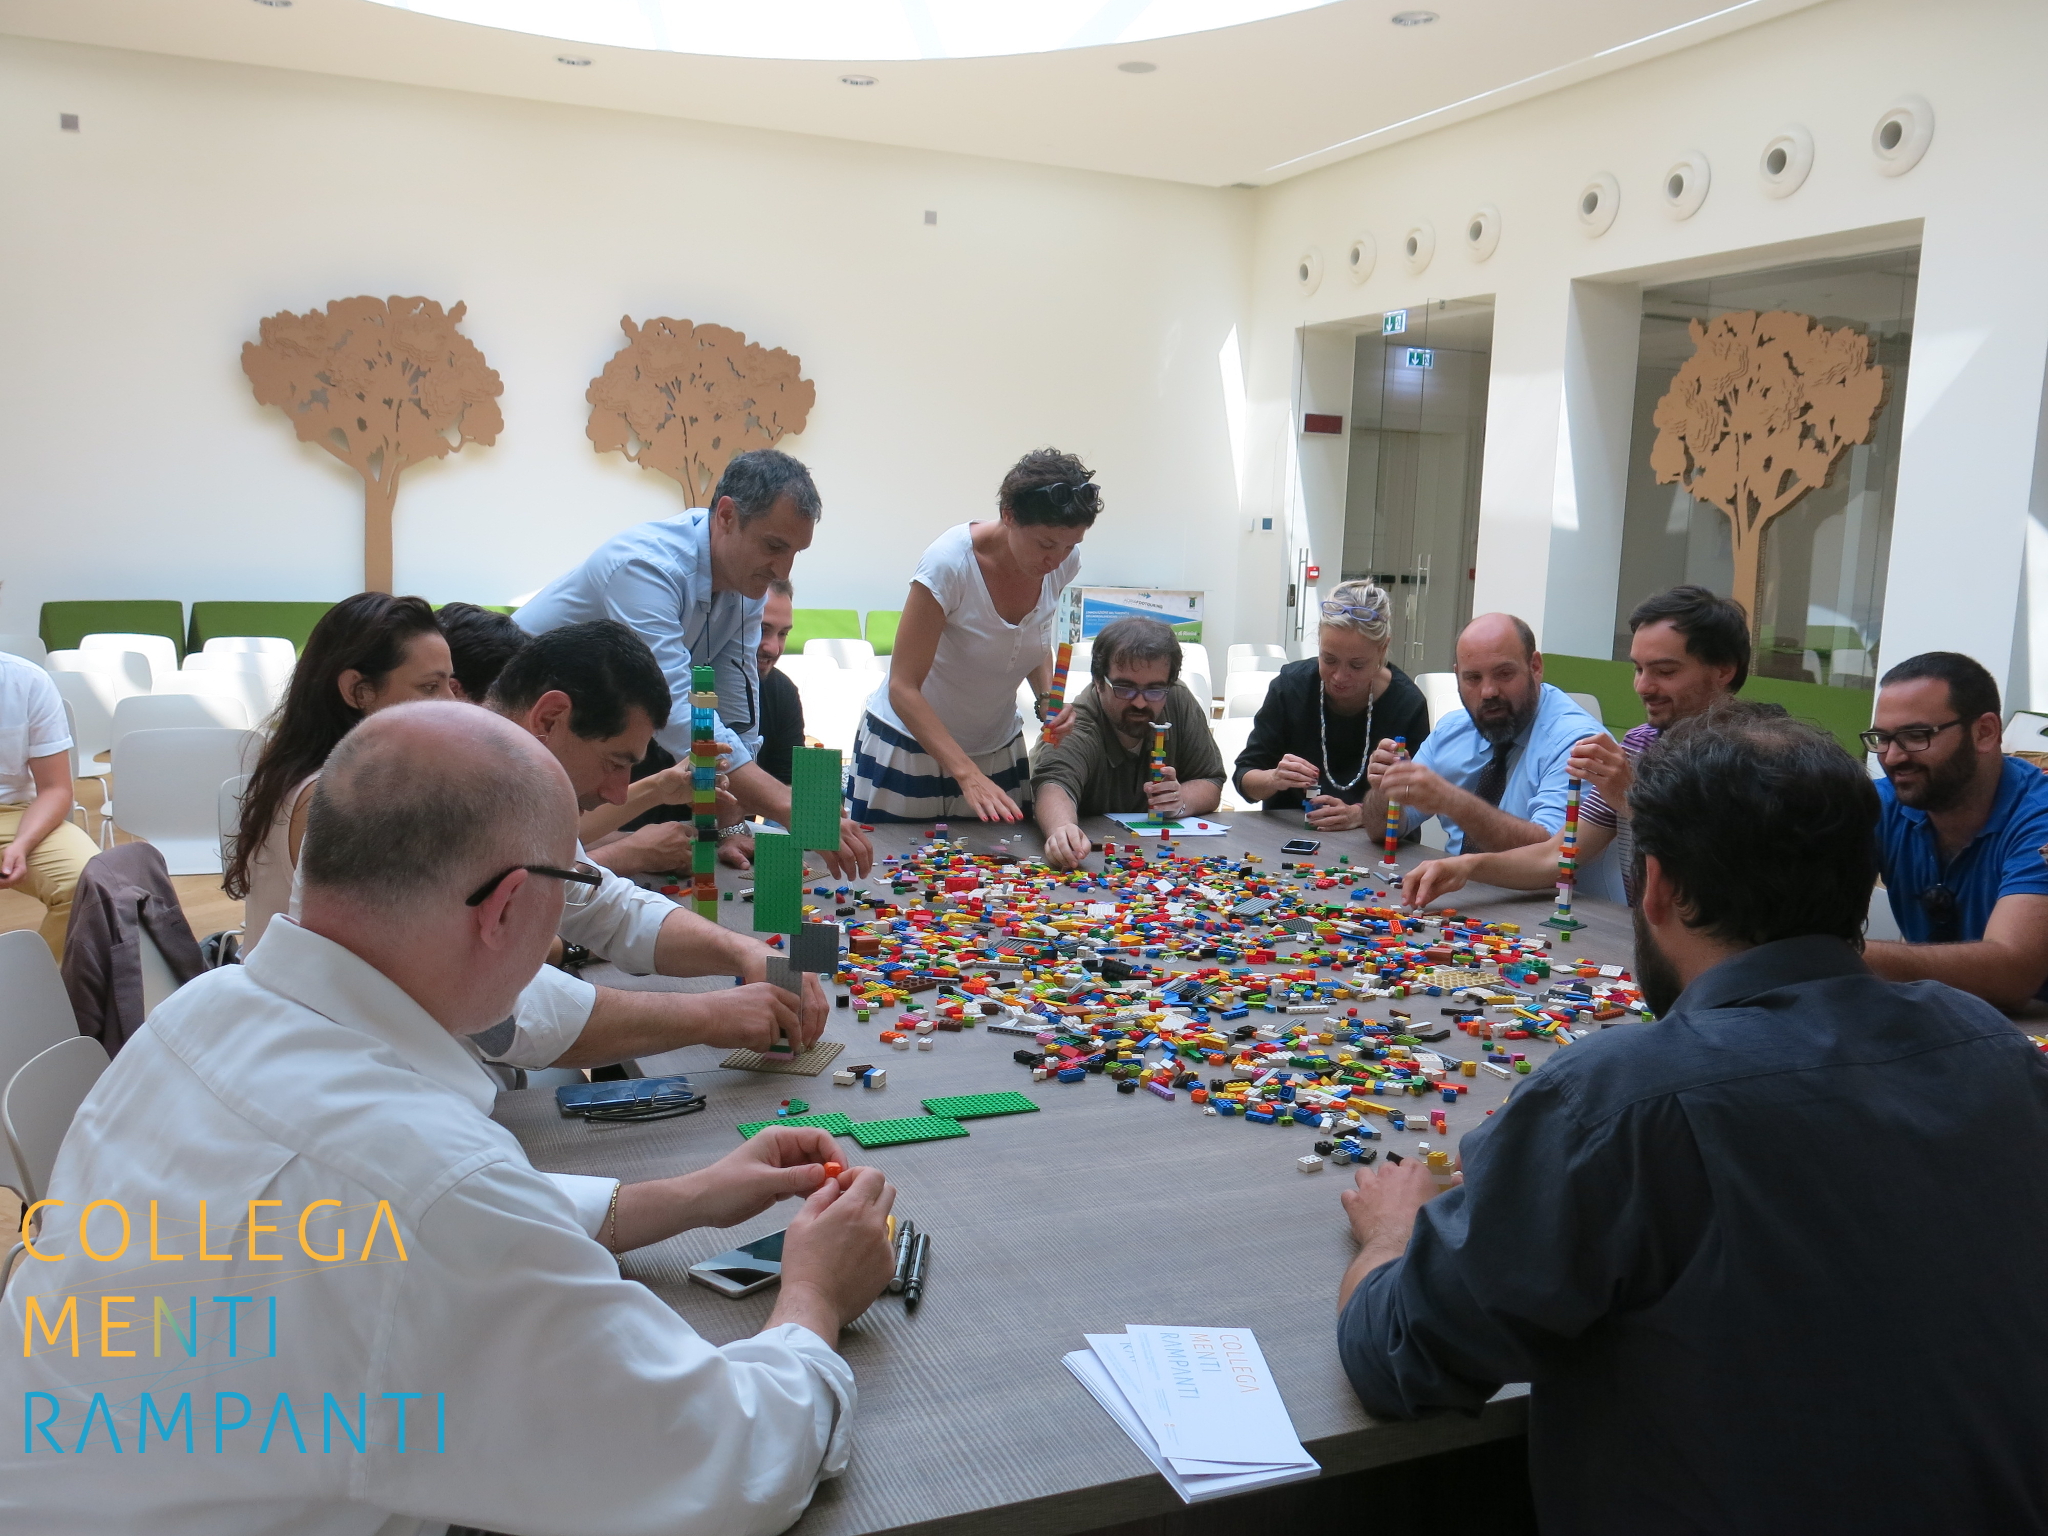 Laboratorio Mattoncini Lab – Lego Serious Play